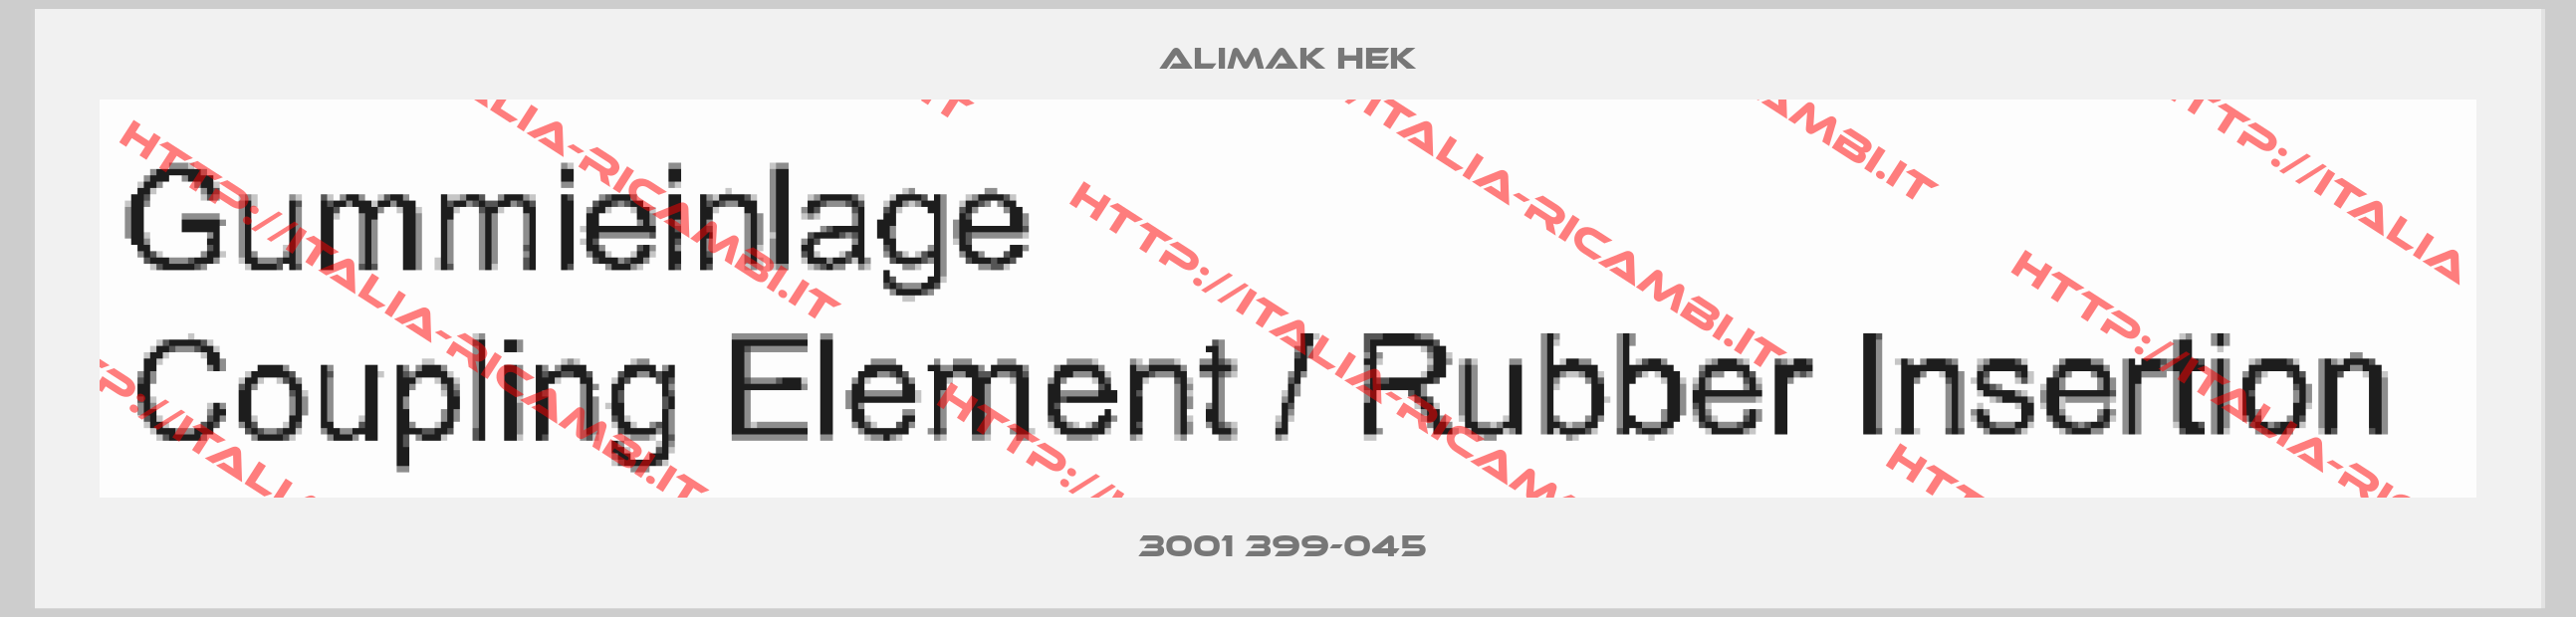 Alimak Hek-3001 399-045 